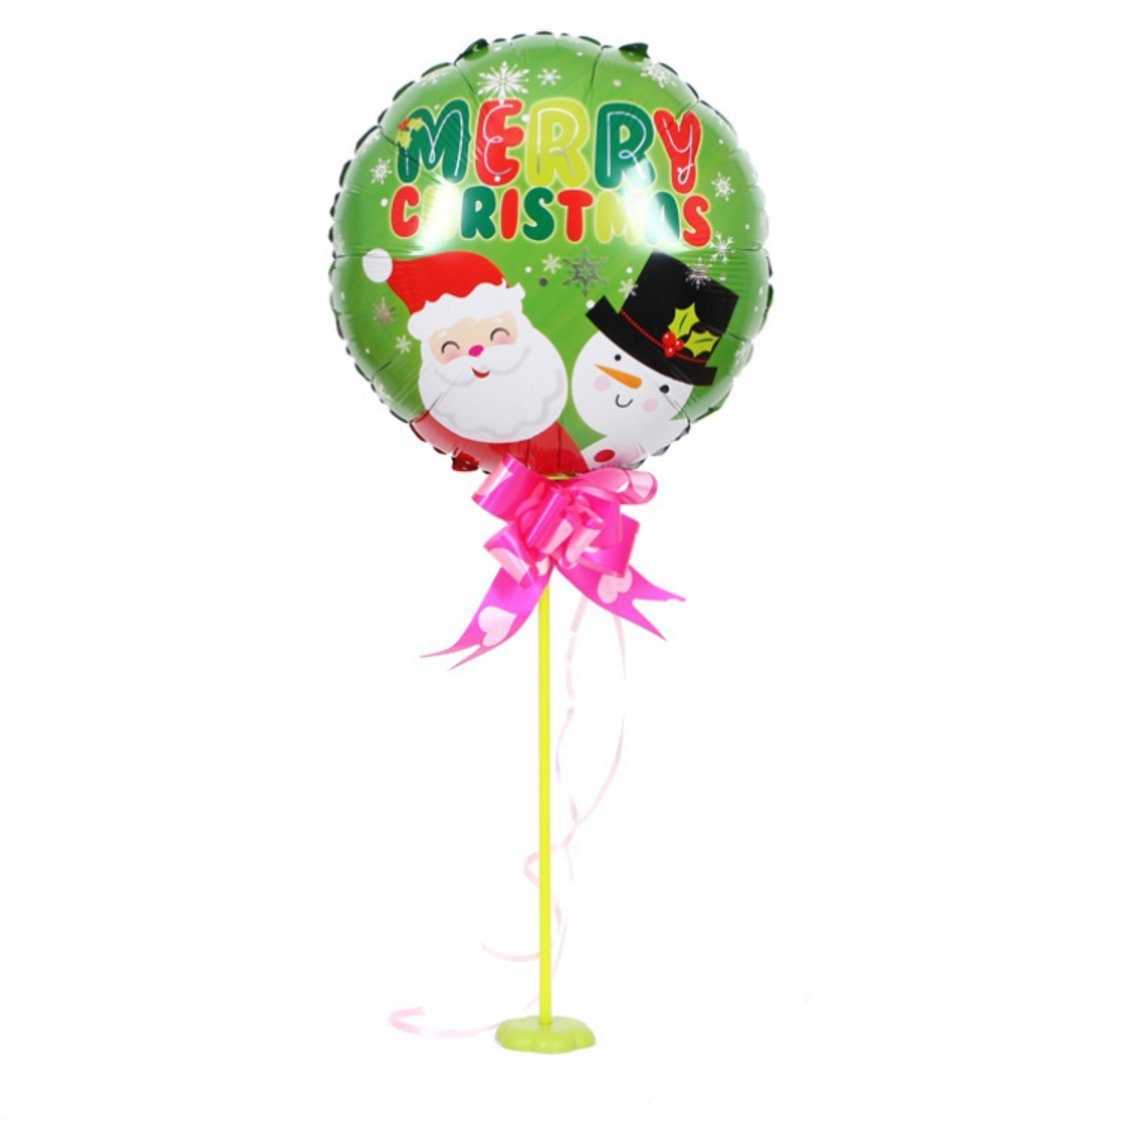 10 bunt Party-Dekorationszubehör für Uana Luftballon Weihnachtsfeiertage